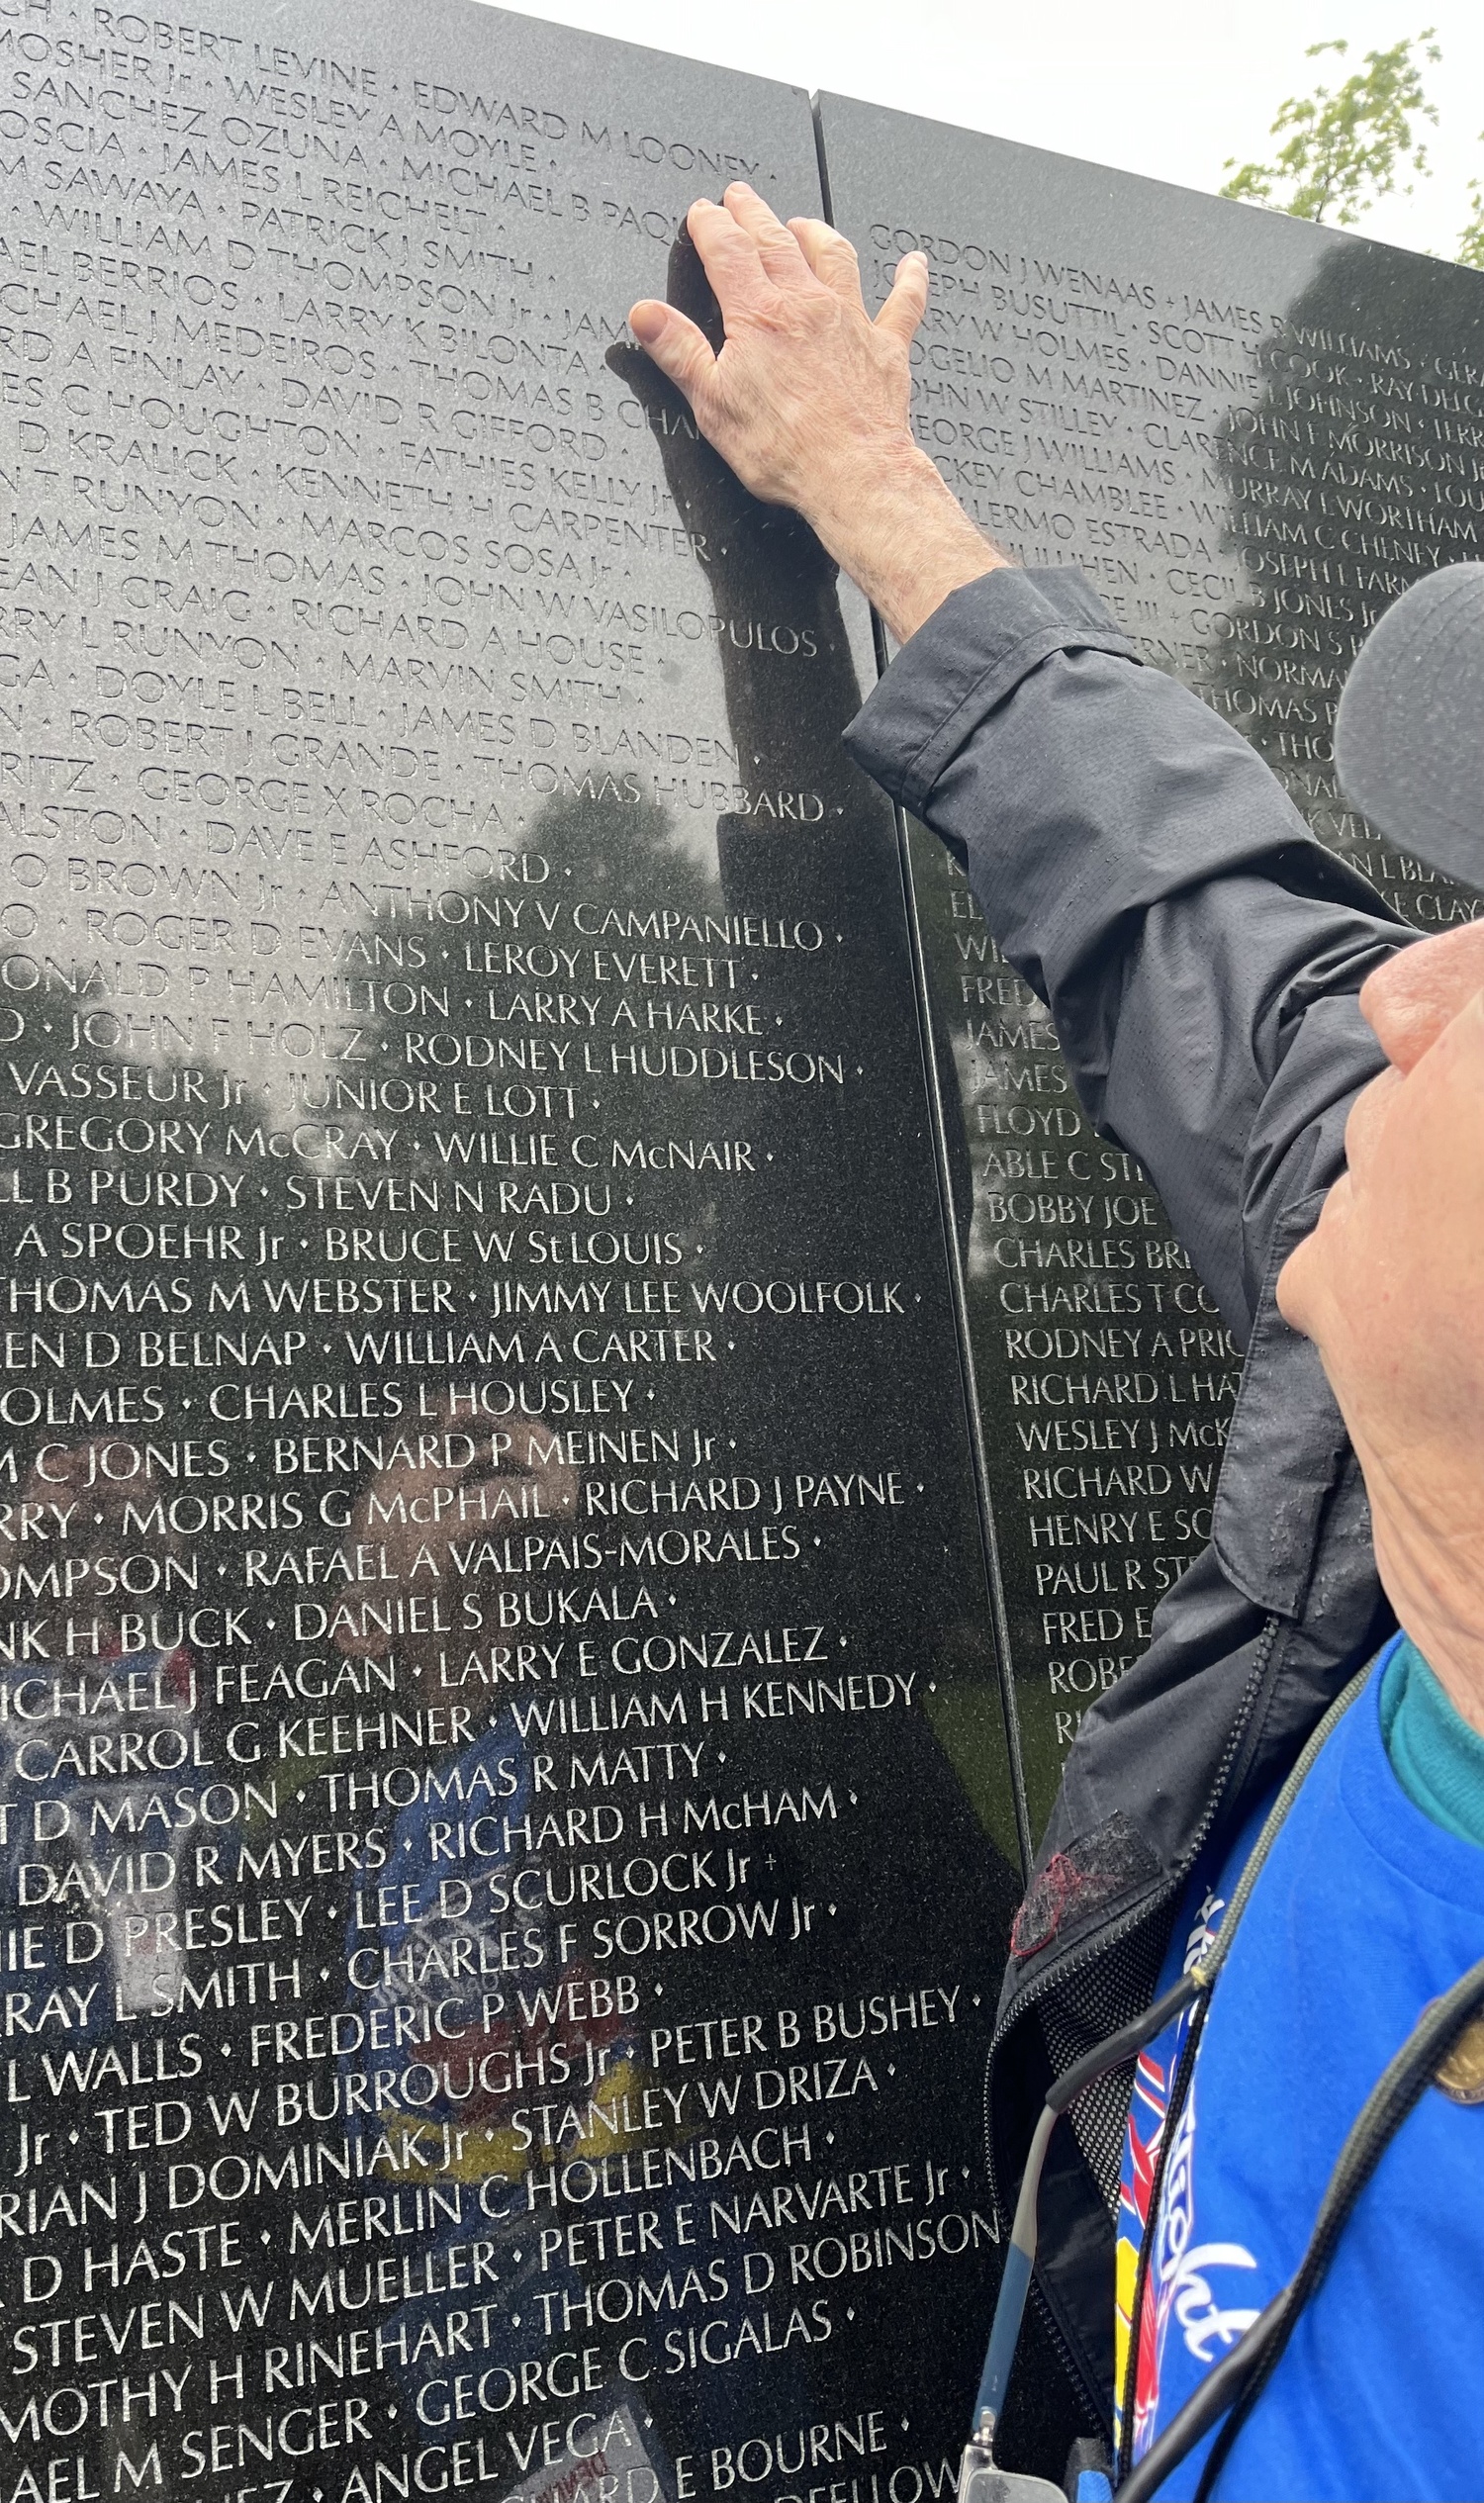 Vietnam War veteran Dennis Riordan points out a fallen comrade's name. MARIA MOORE